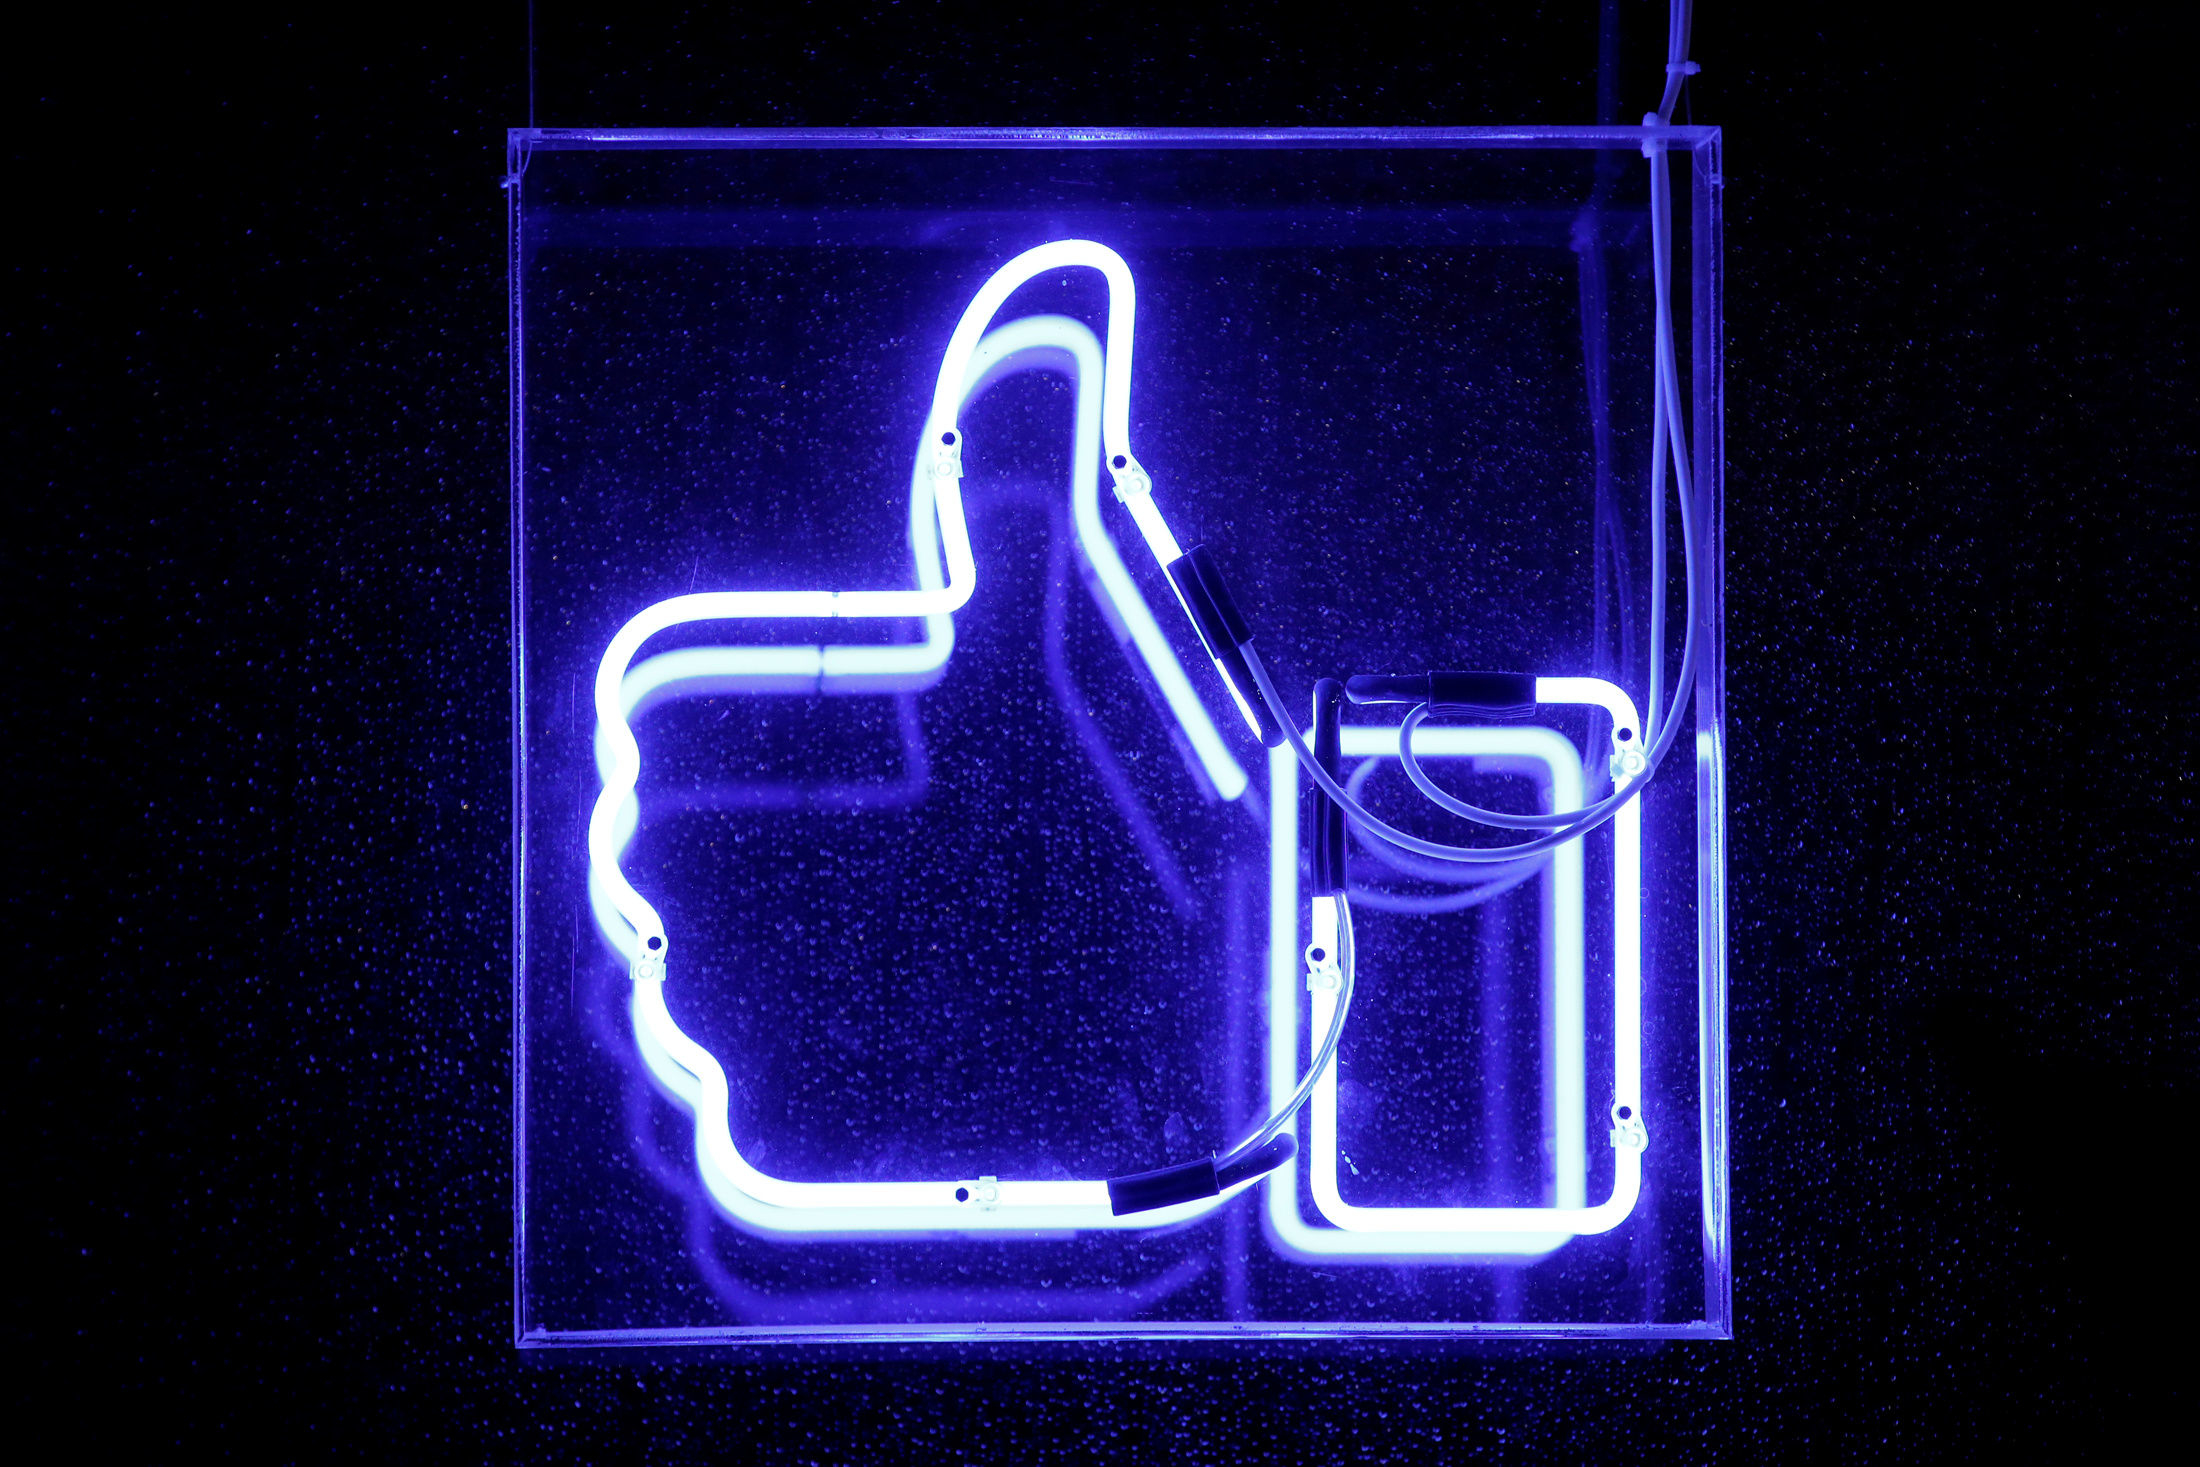 Facebook tái cơ cấu lại nội dung Newsfeed, status của bạn bè và gia đình sẽ được ưu tiên nhiều hơn